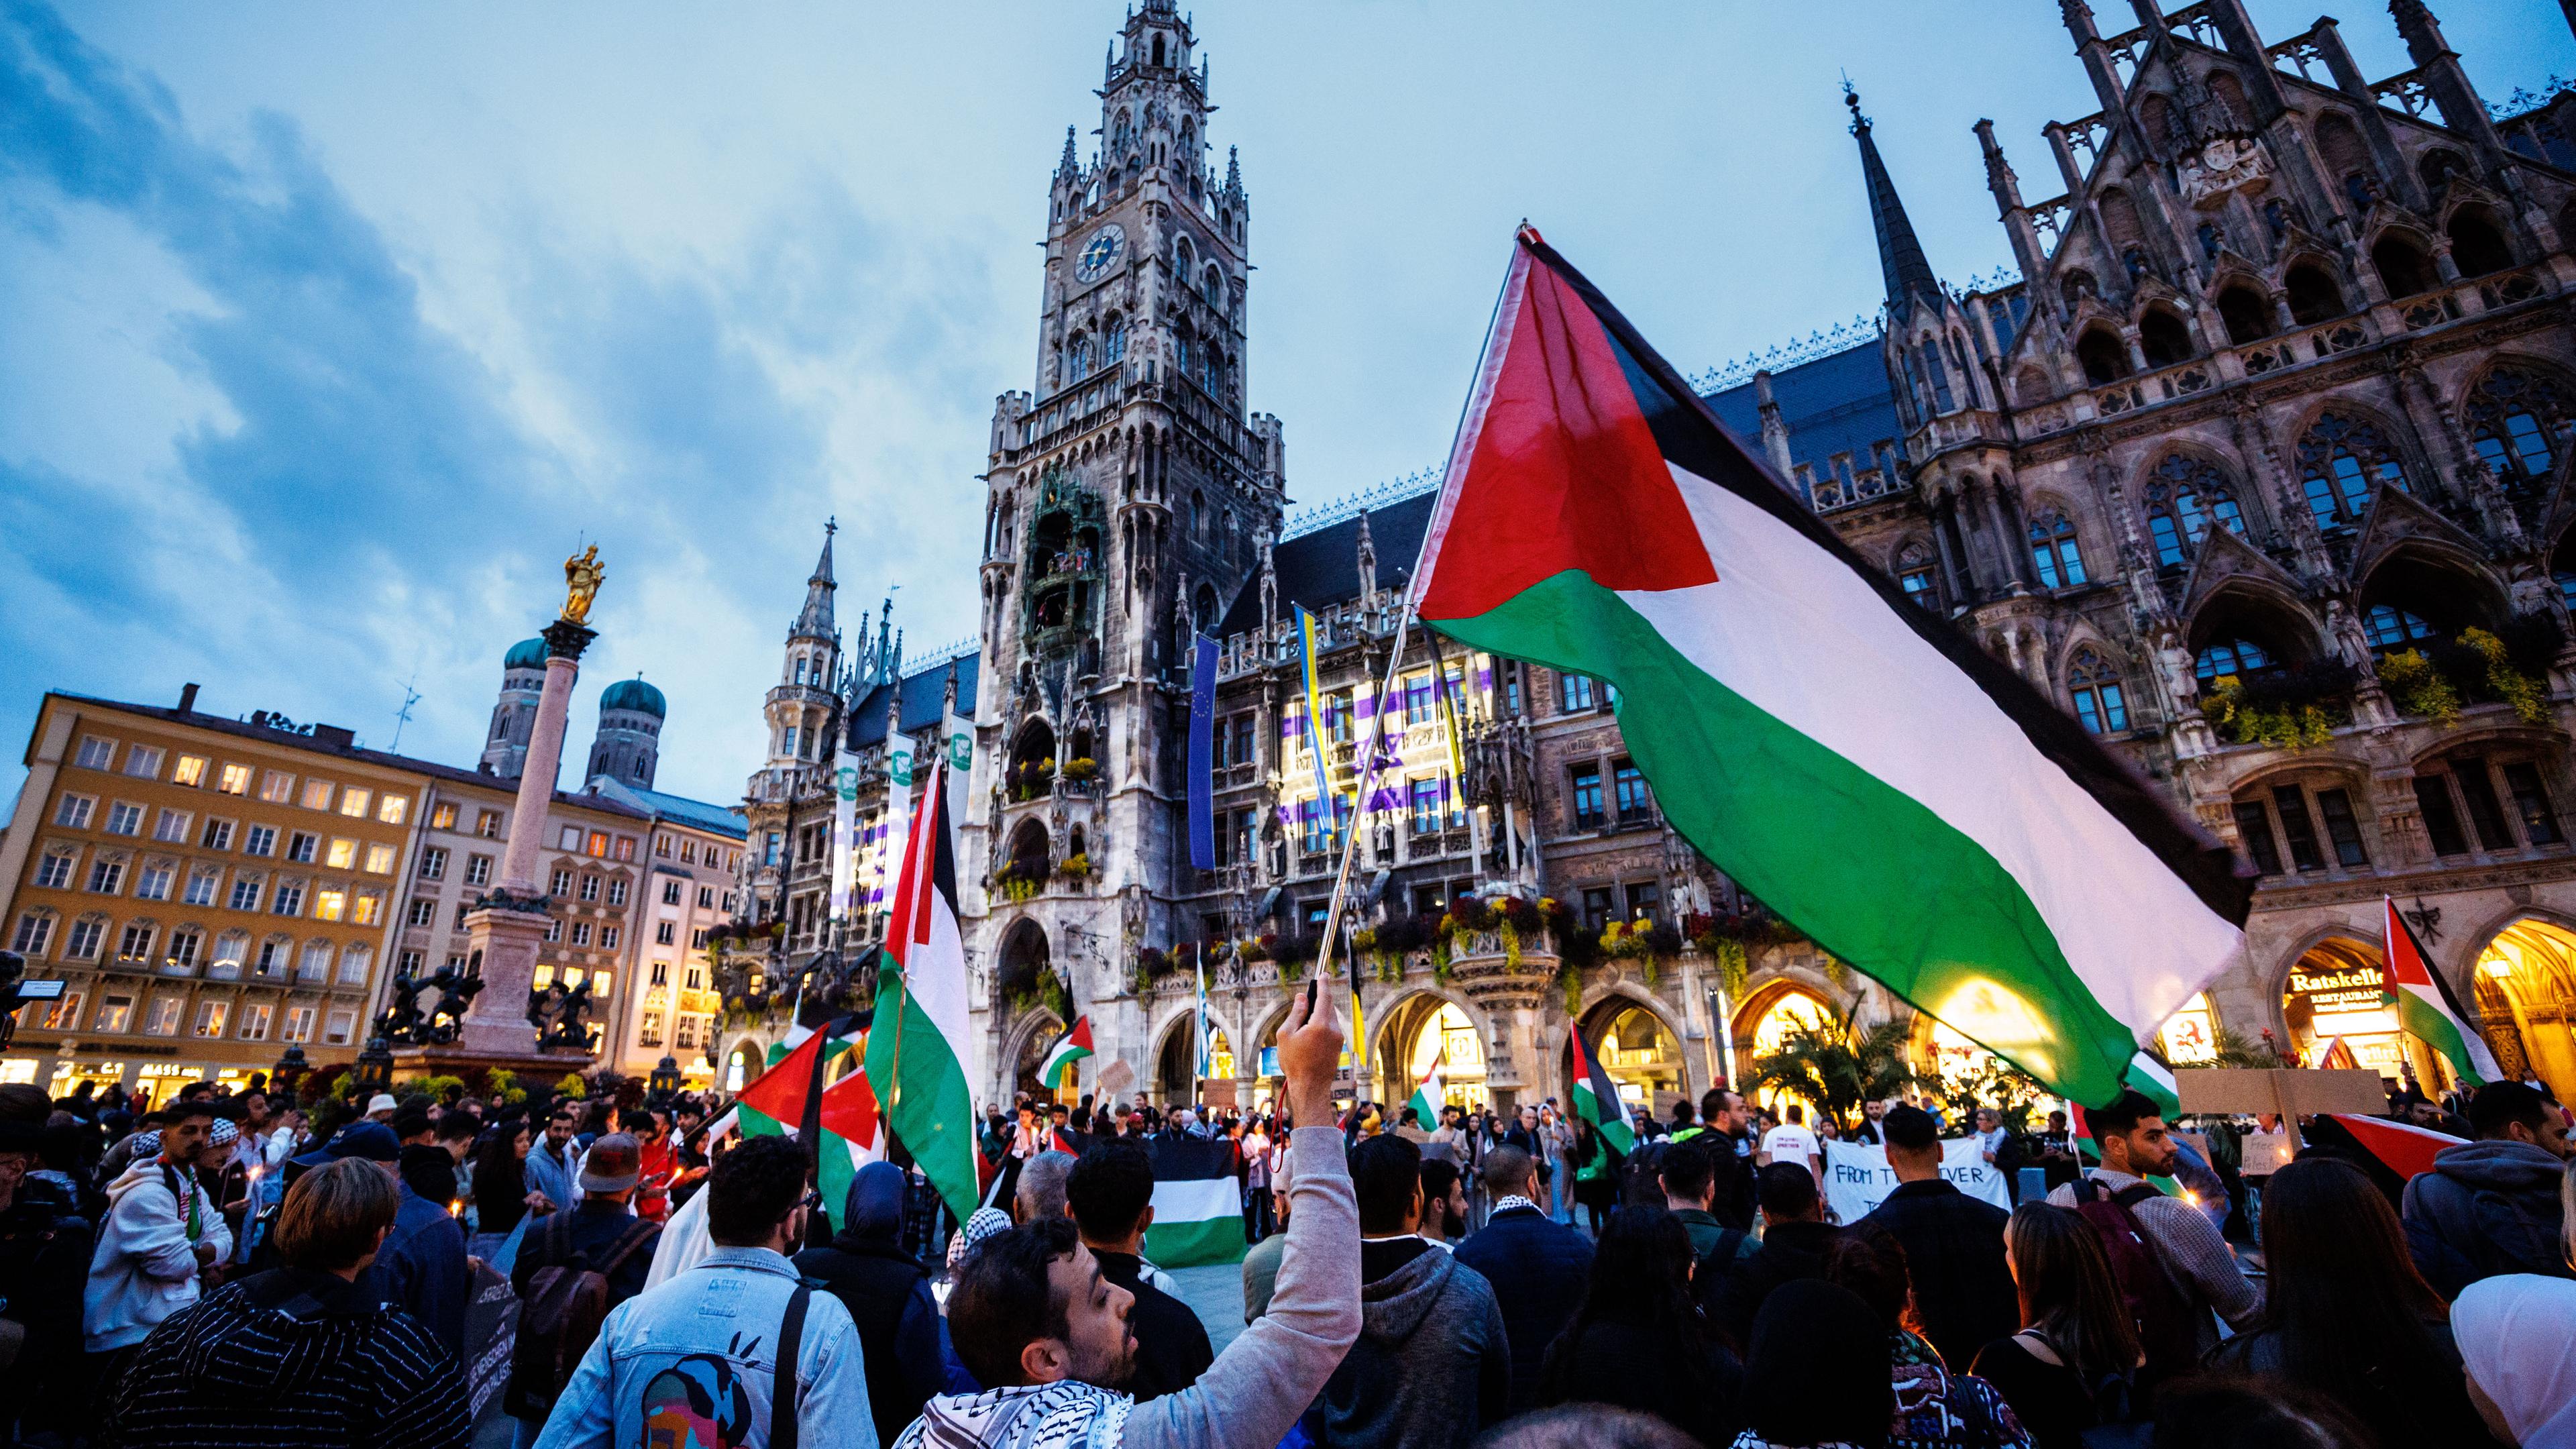 Pro-palästinensische Kundgebung in München